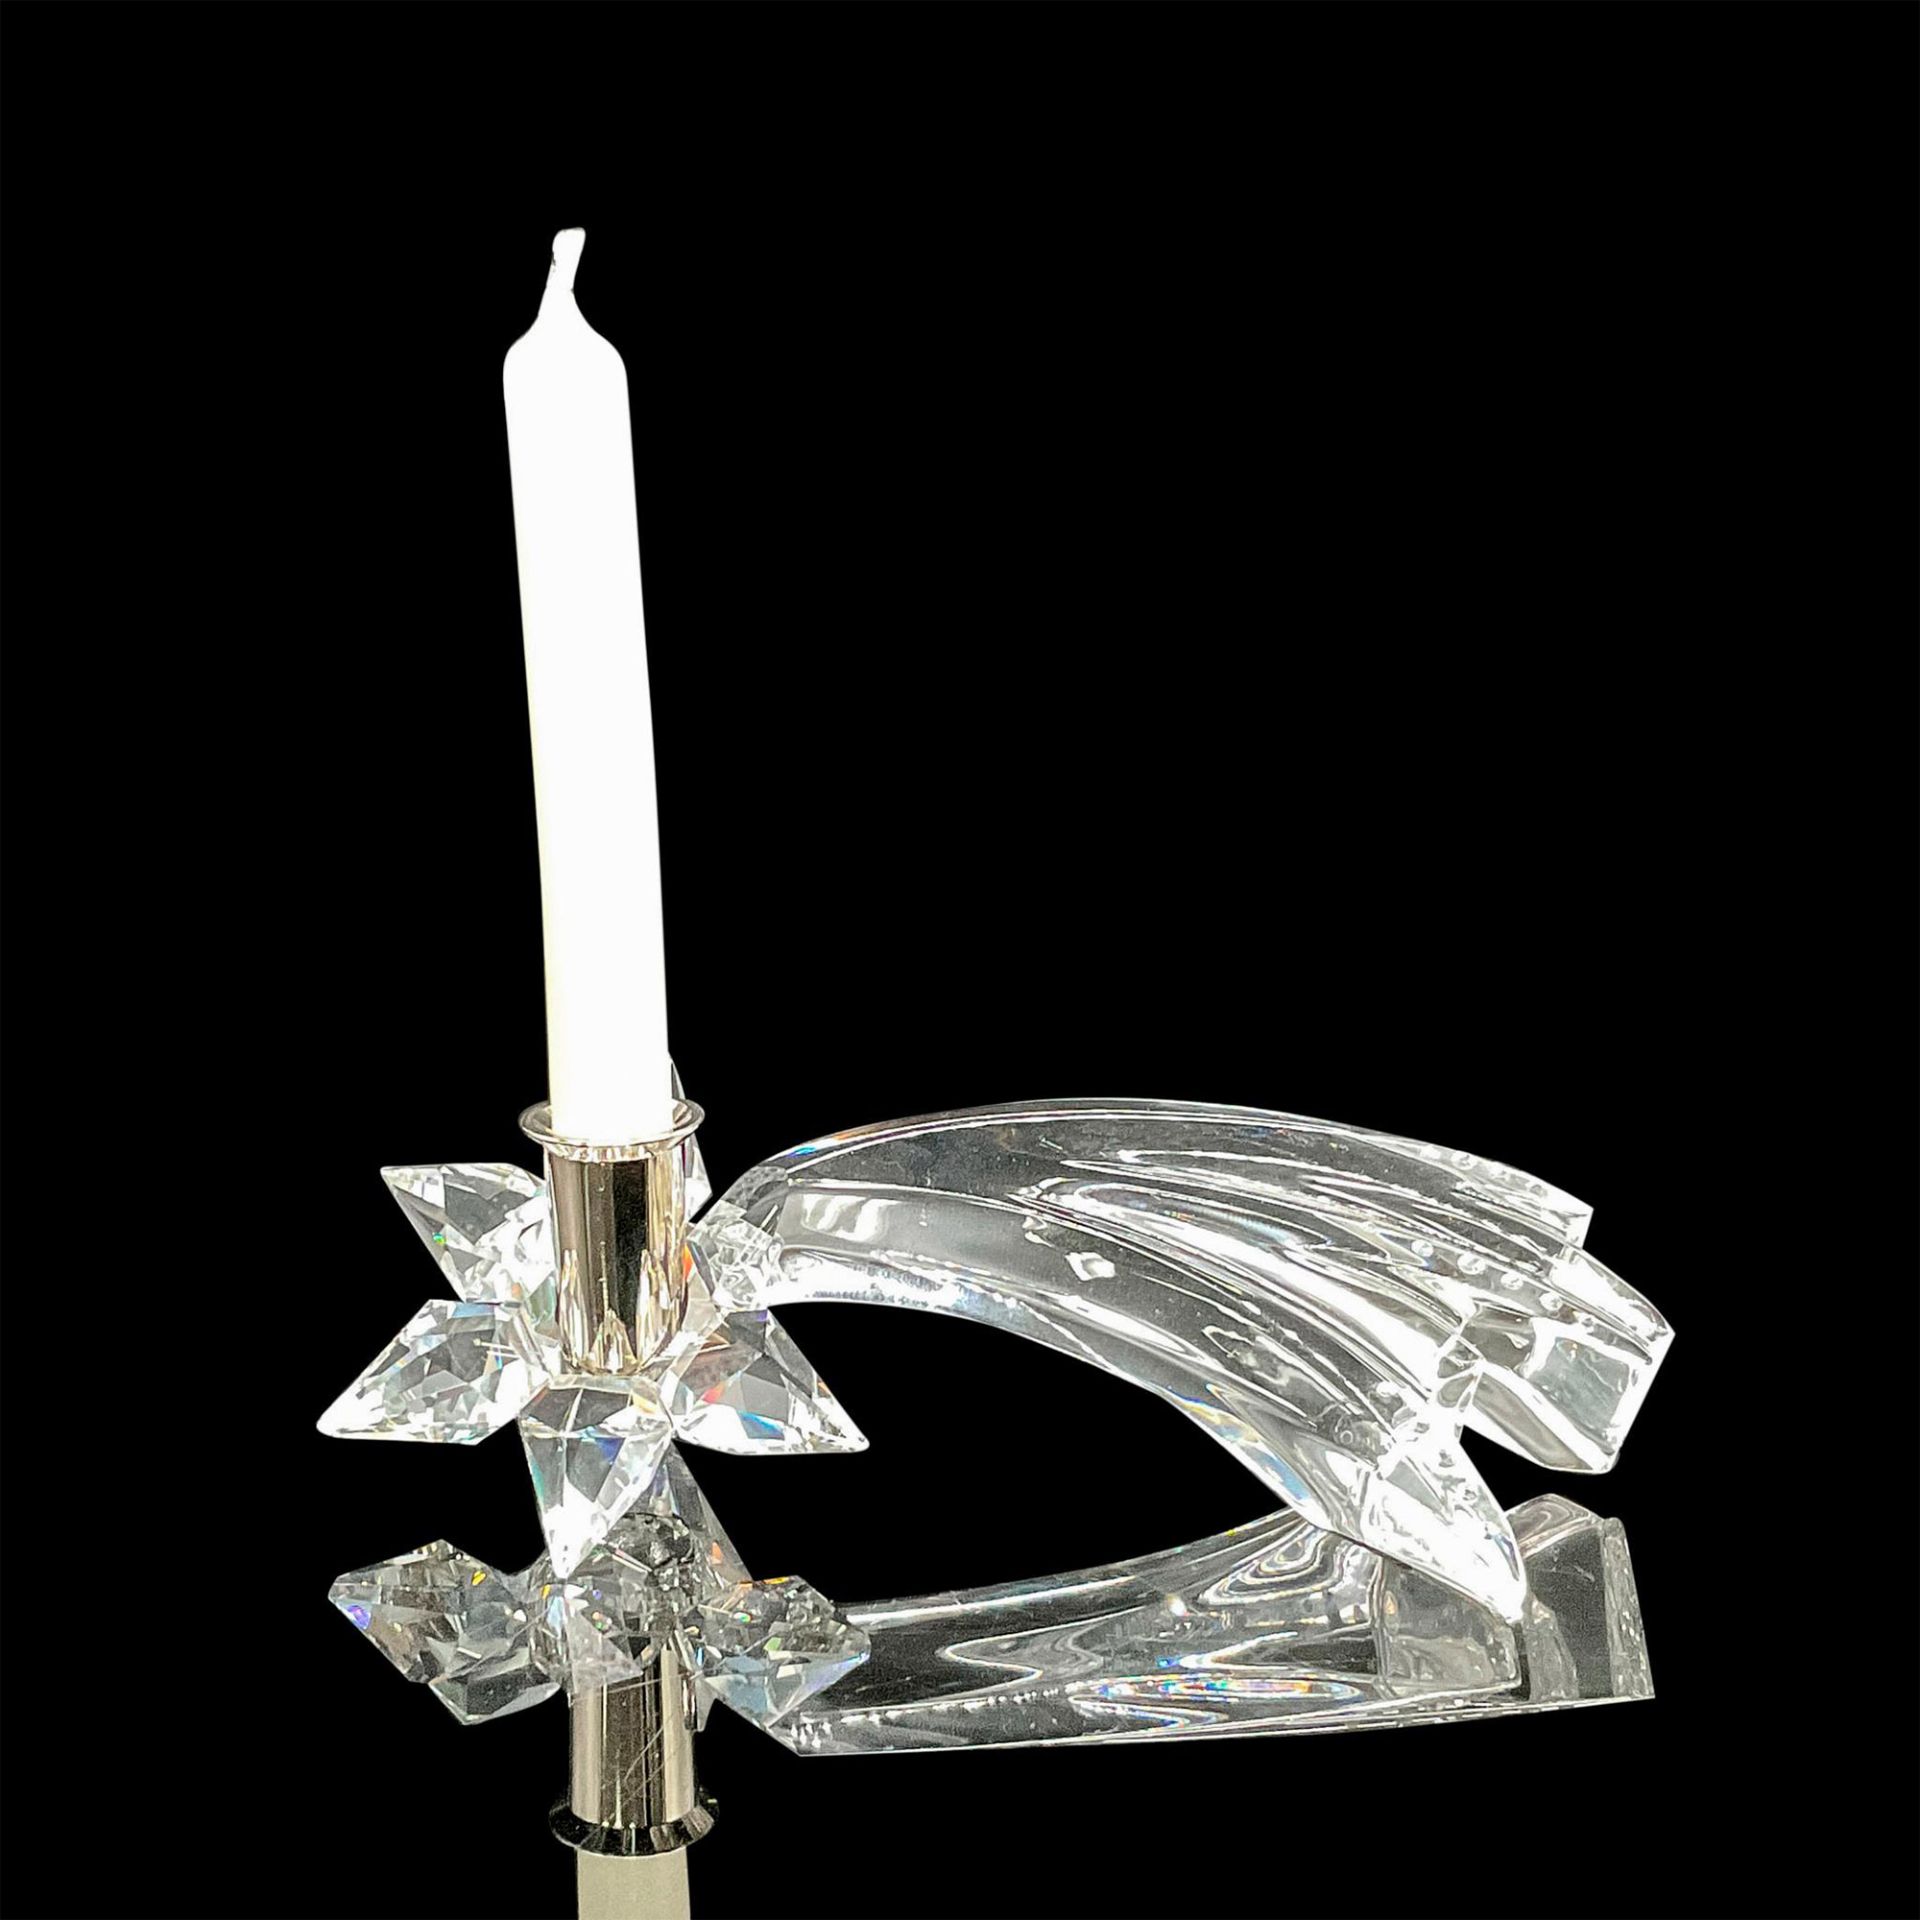 Swarovski Silver Crystal Comet Candleholder